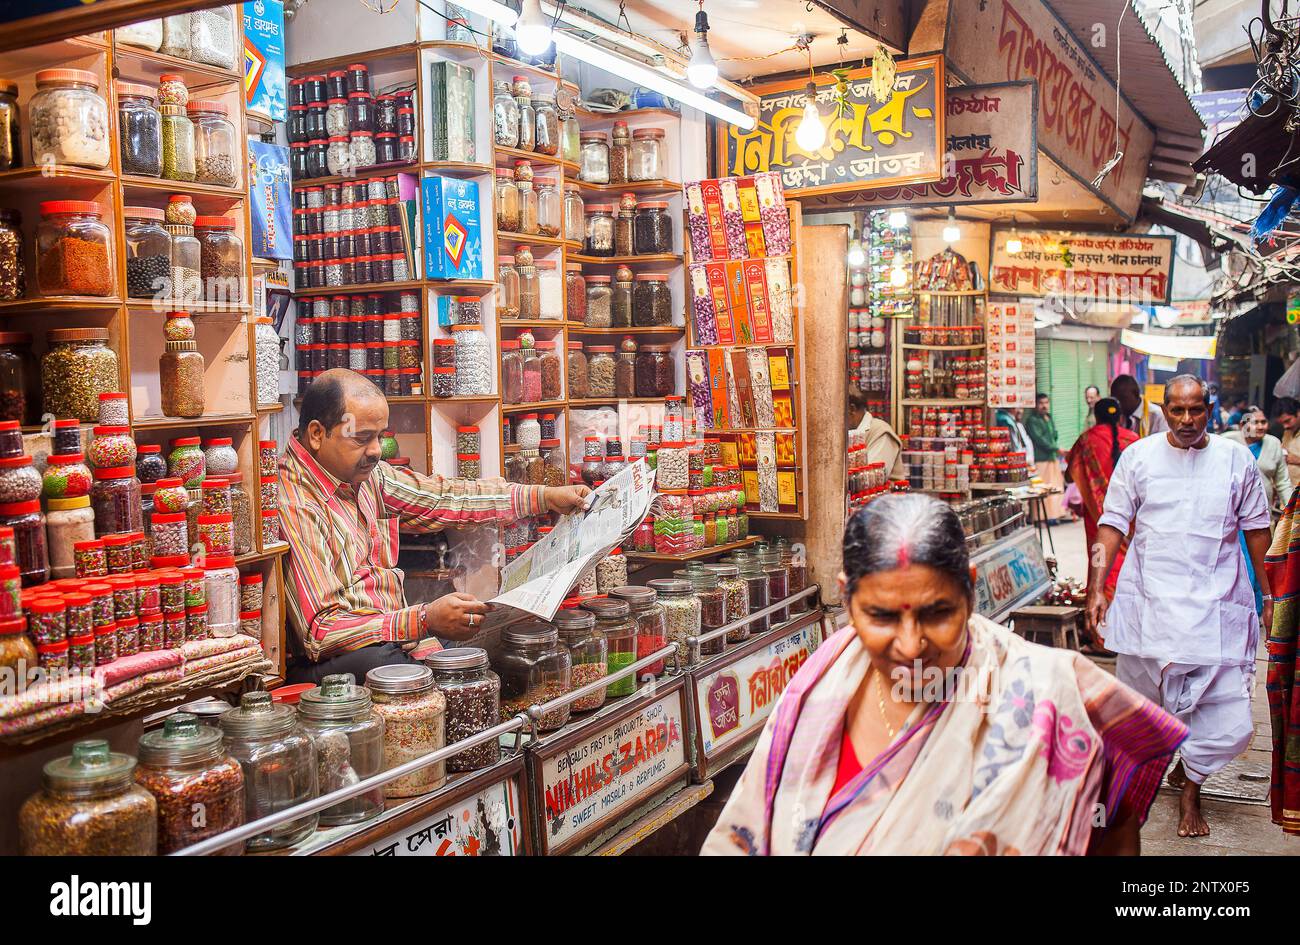 Spice shop, main bazaar,Historical Center, near Dashashwamedh Ghat Road , Varanasi, Uttar Pradesh Stock Photo